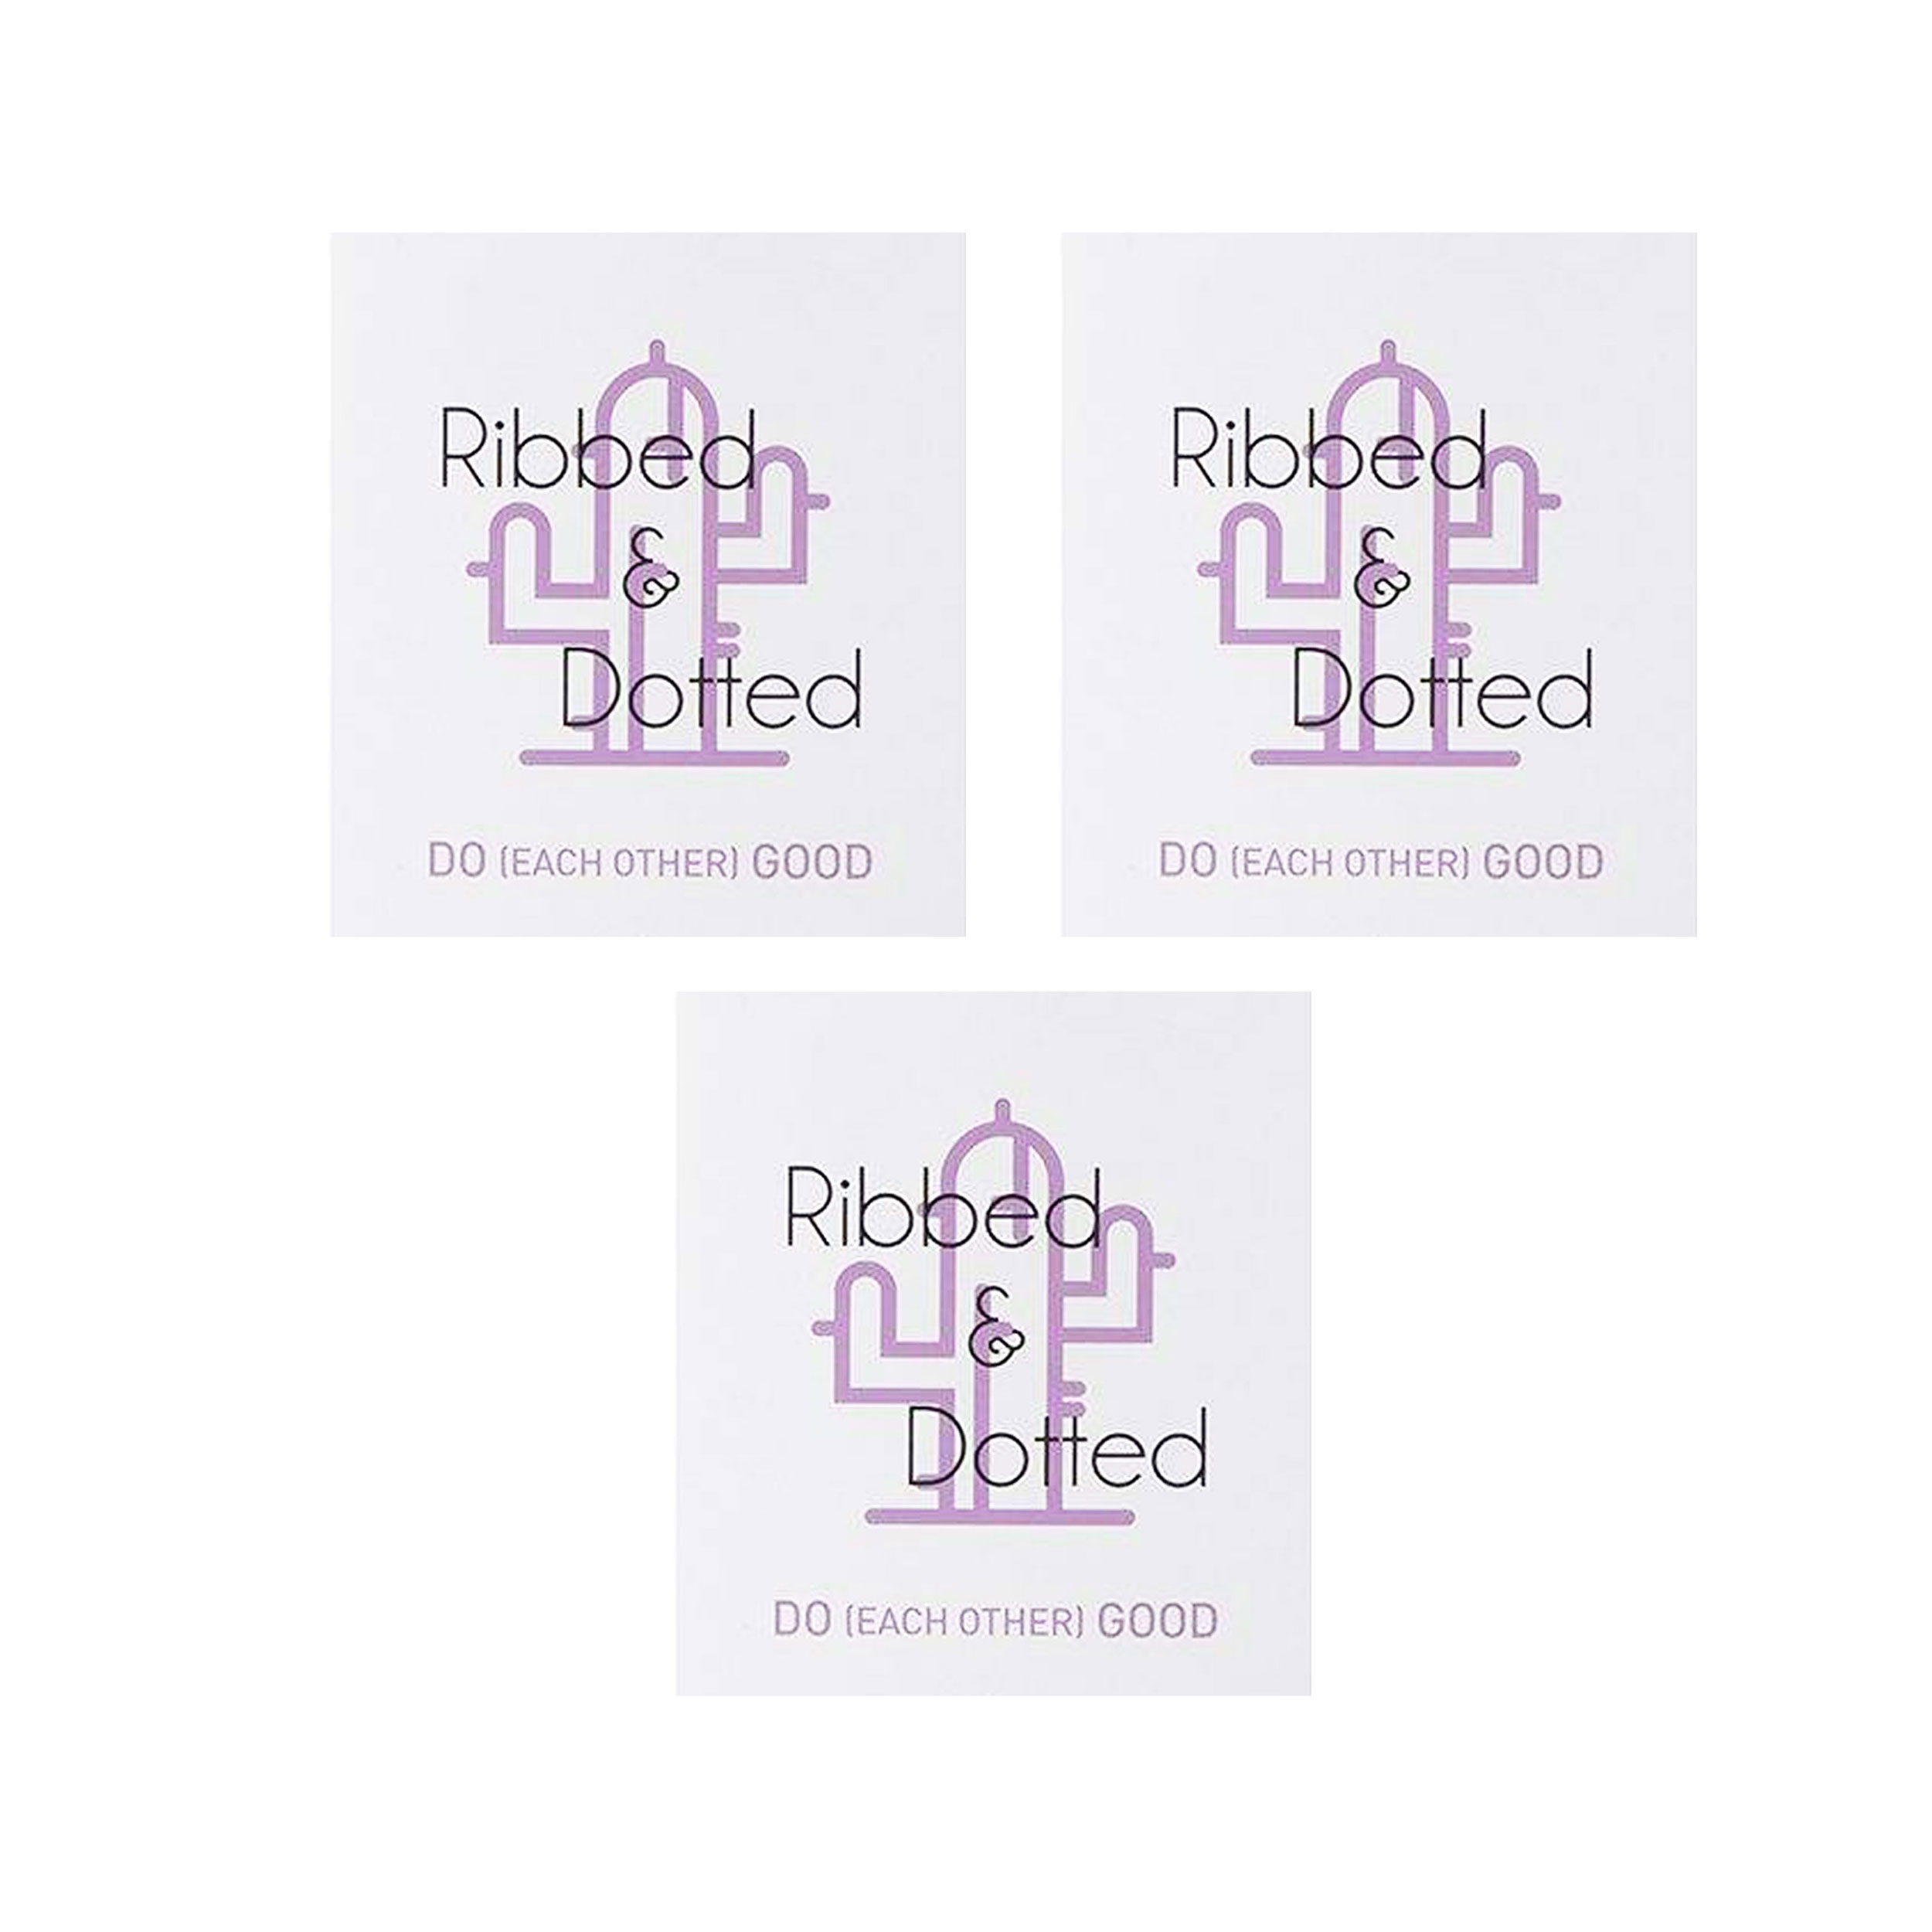 کاندوم چرچیلز مدل Ribbed & Dotted کد Sh0054 مجموعه 3 عددی